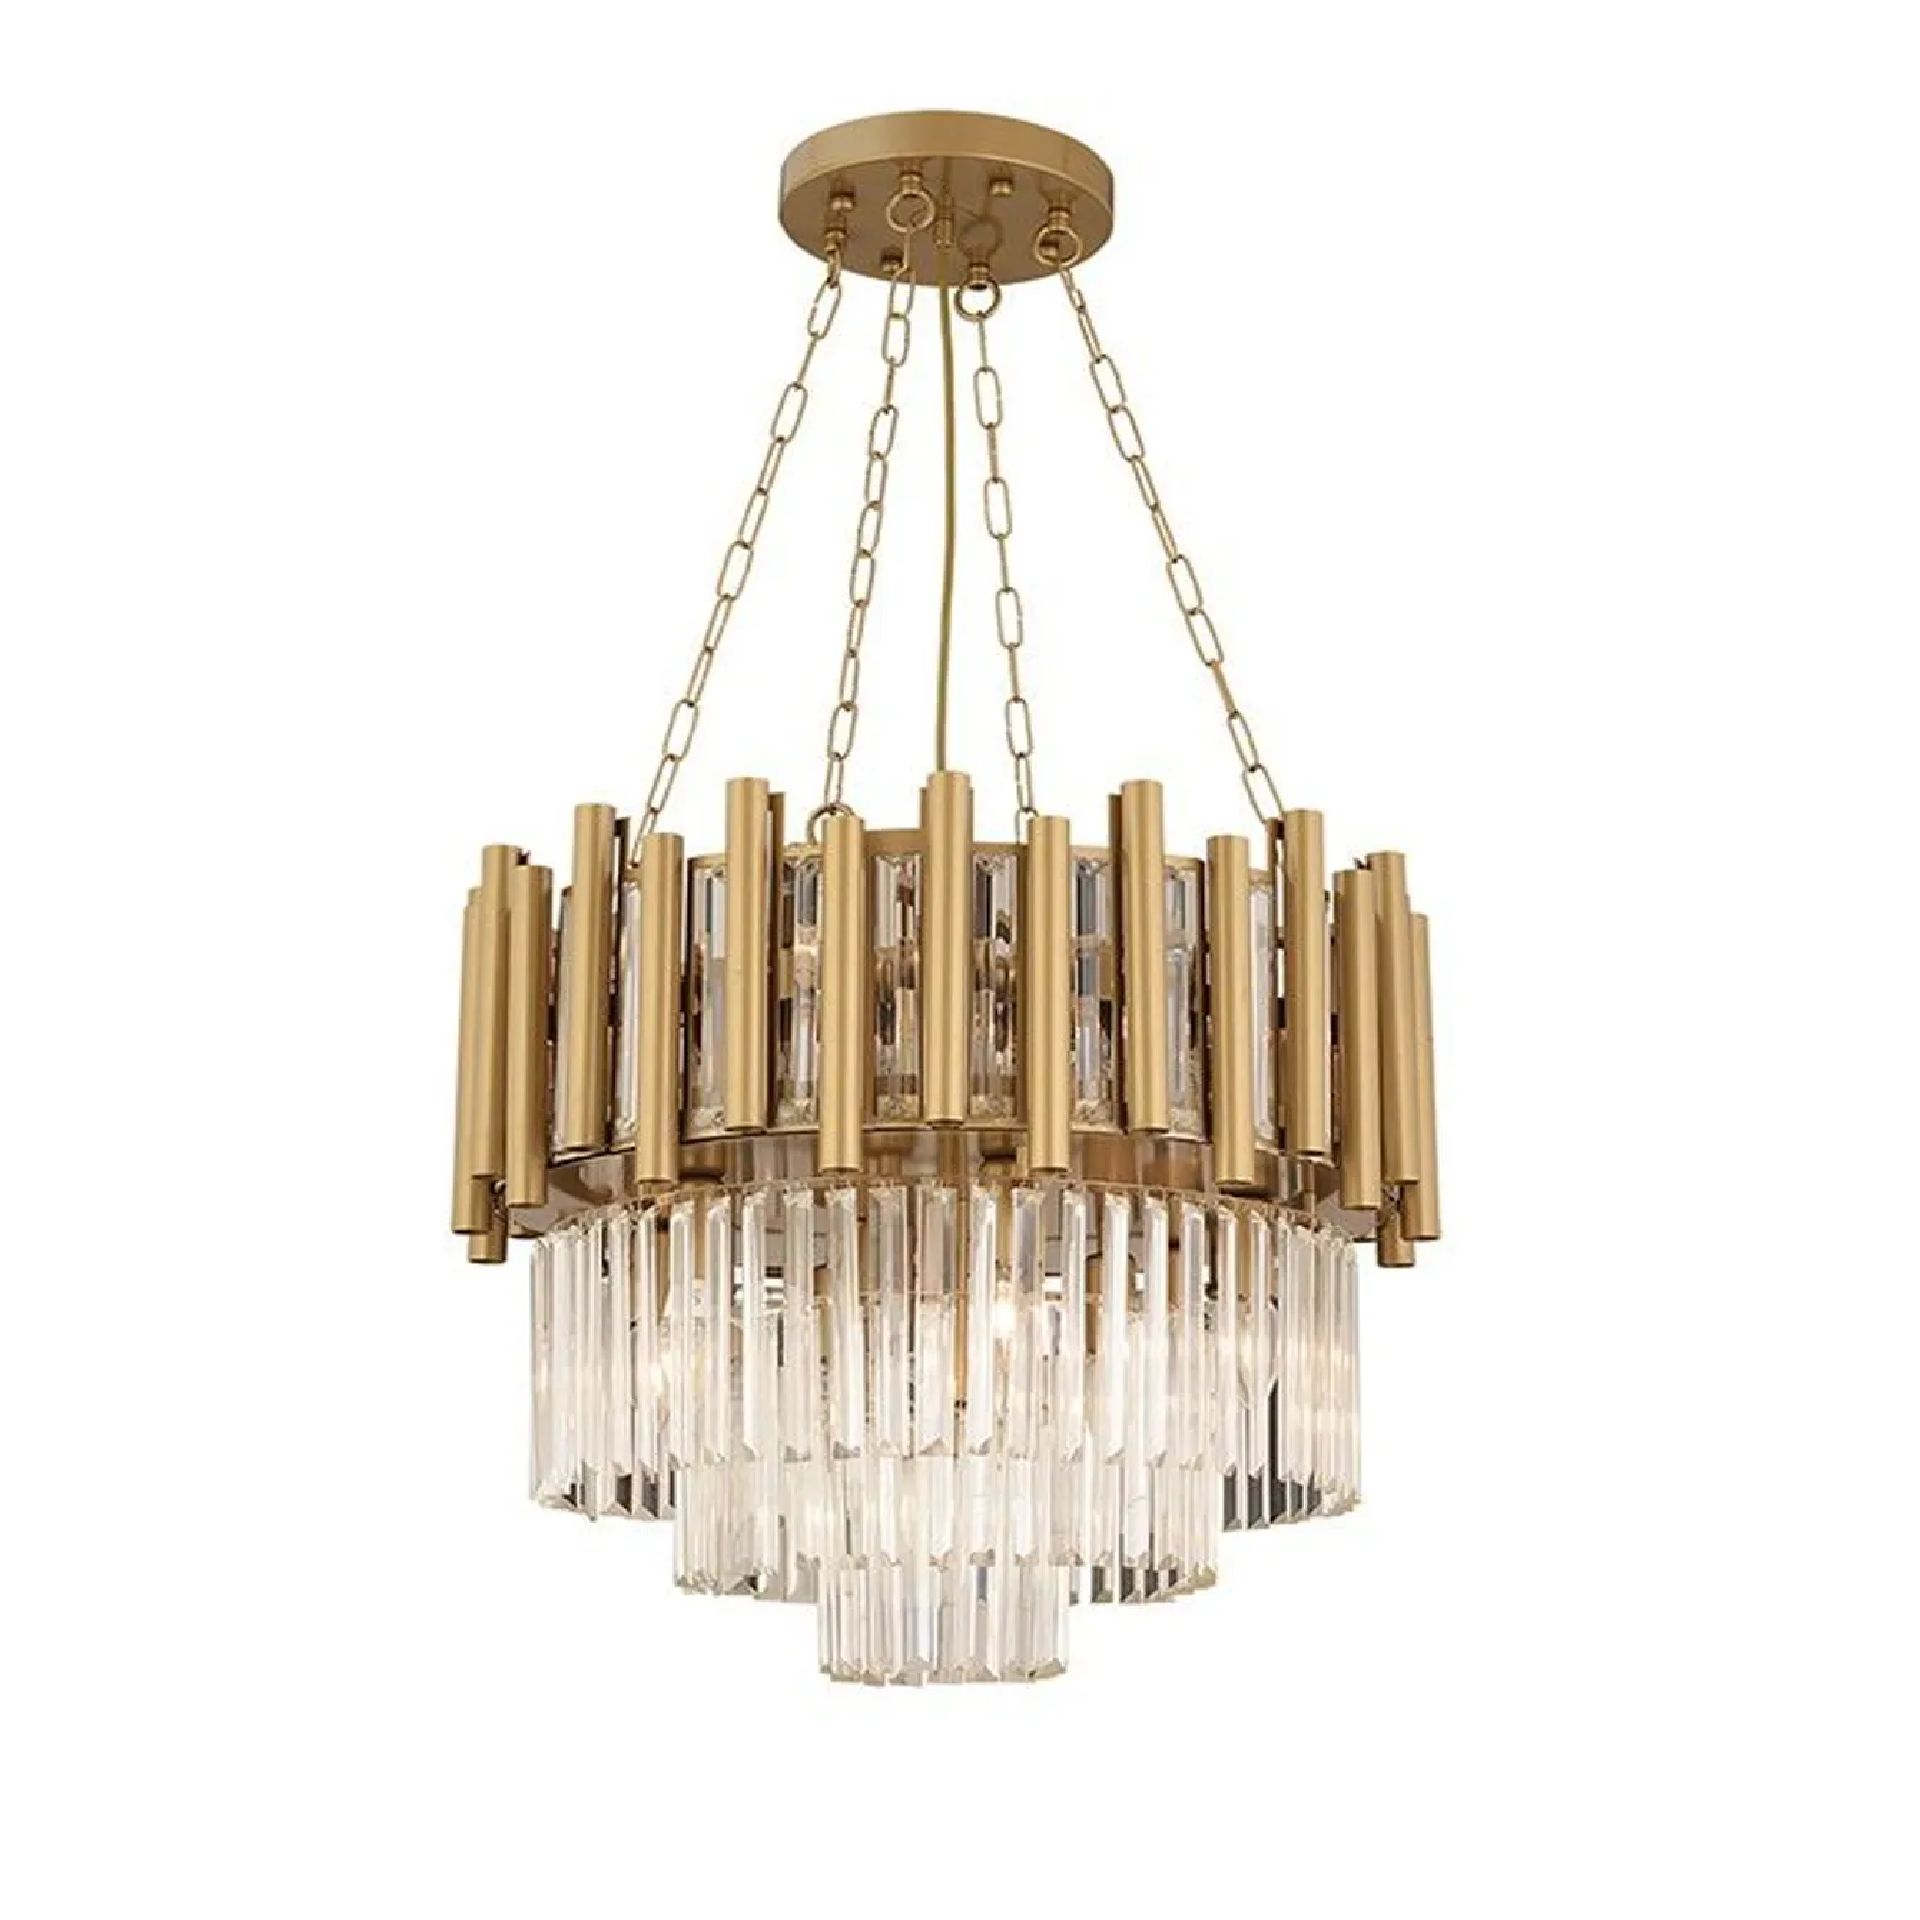 APLIQA MOSTAR chandelier by Romatti